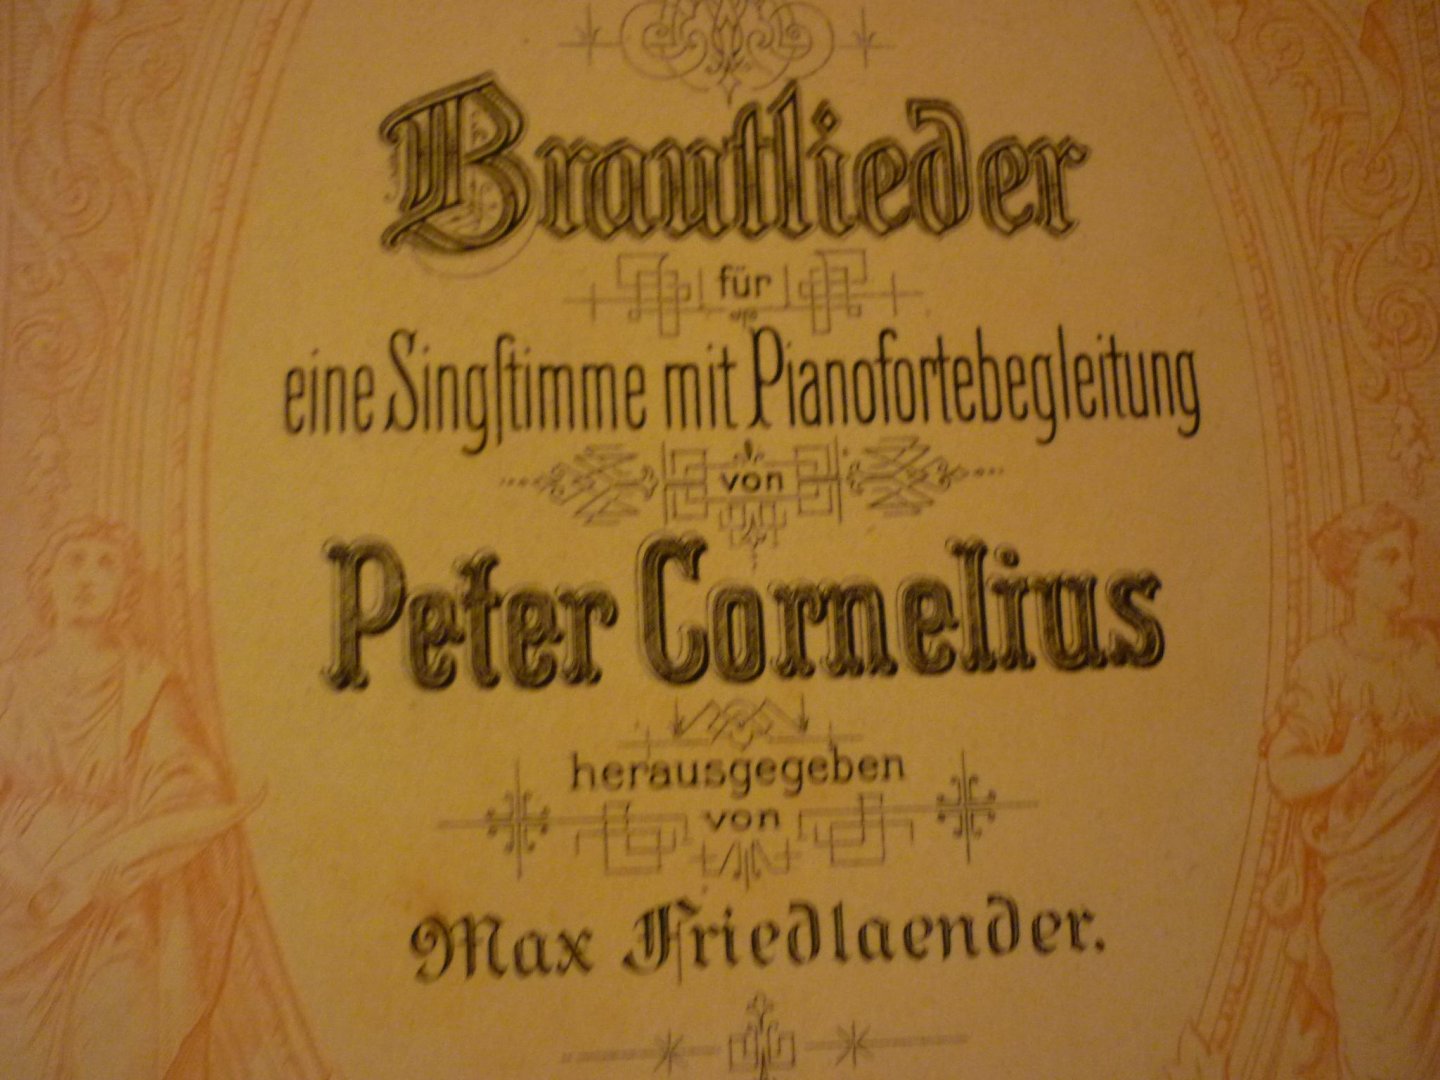 Cornelius; Peter - Brautlieder Hohe Stimme;  fur eine Singstimme mit Pianoforte (herausgegeben von Max Friedlaender)